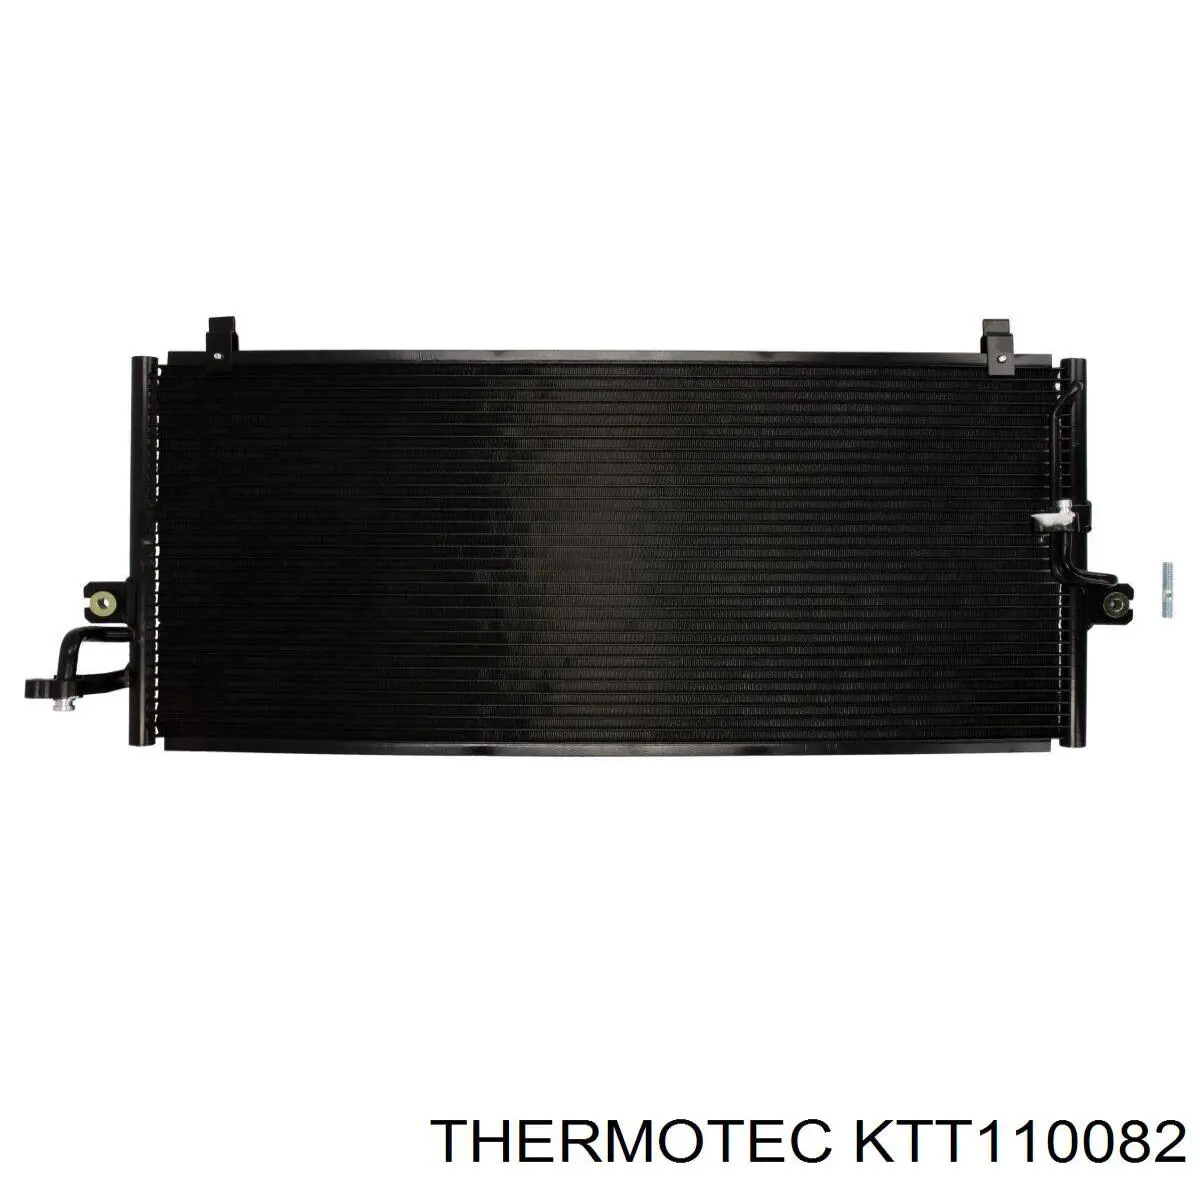 KTT110082 Thermotec condensador aire acondicionado